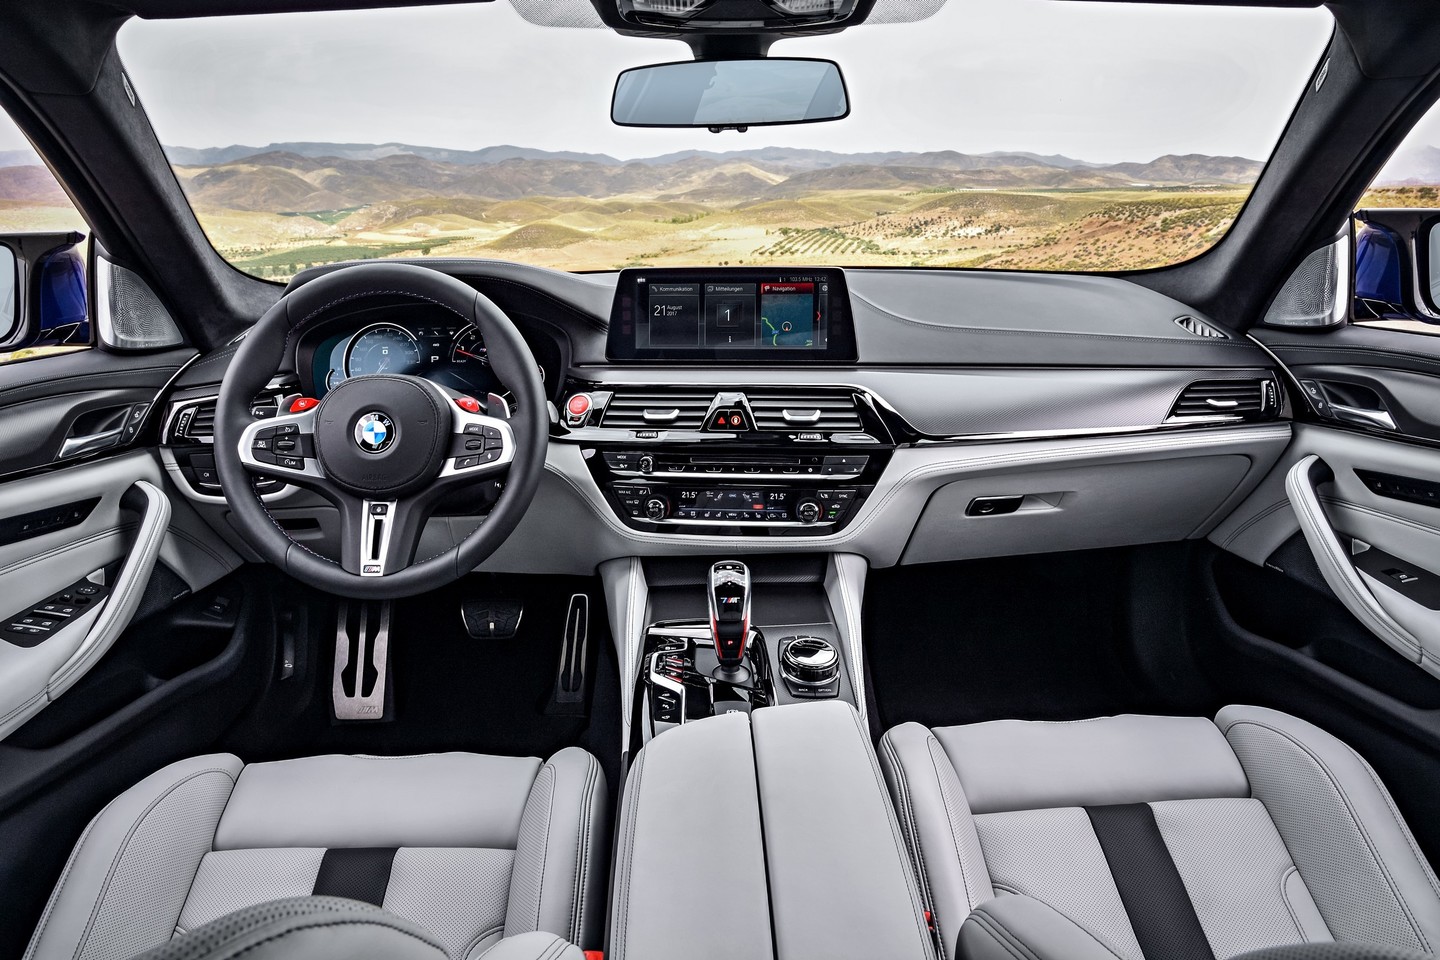  BMW M5 pirmą kartą bus varomas visais ratais.<br> Gamintojo nuotr.